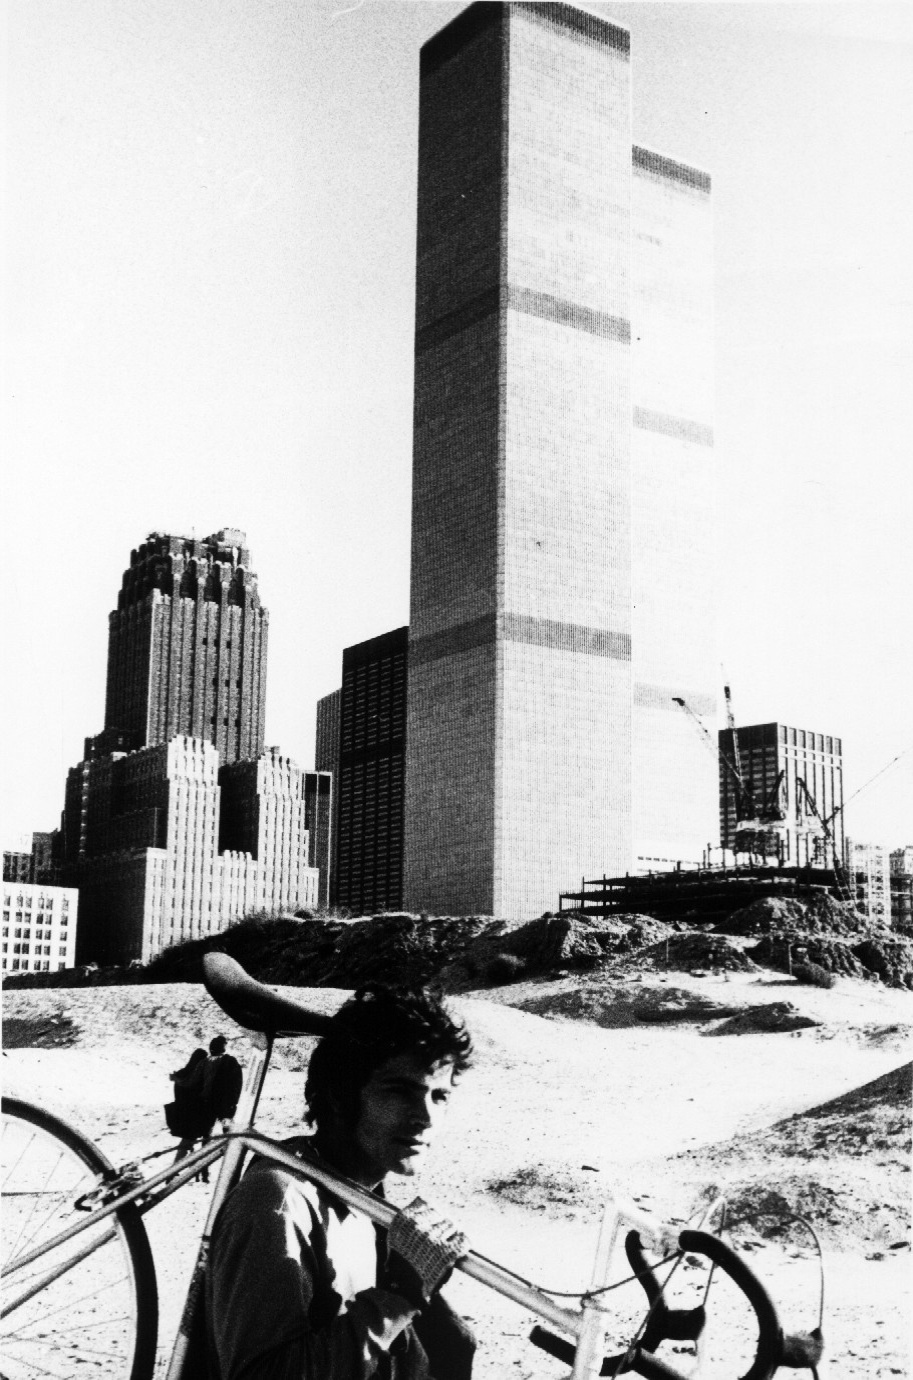 O mineiro carrega sua bicileta; no fundo a fachada do World Trade Center em NY